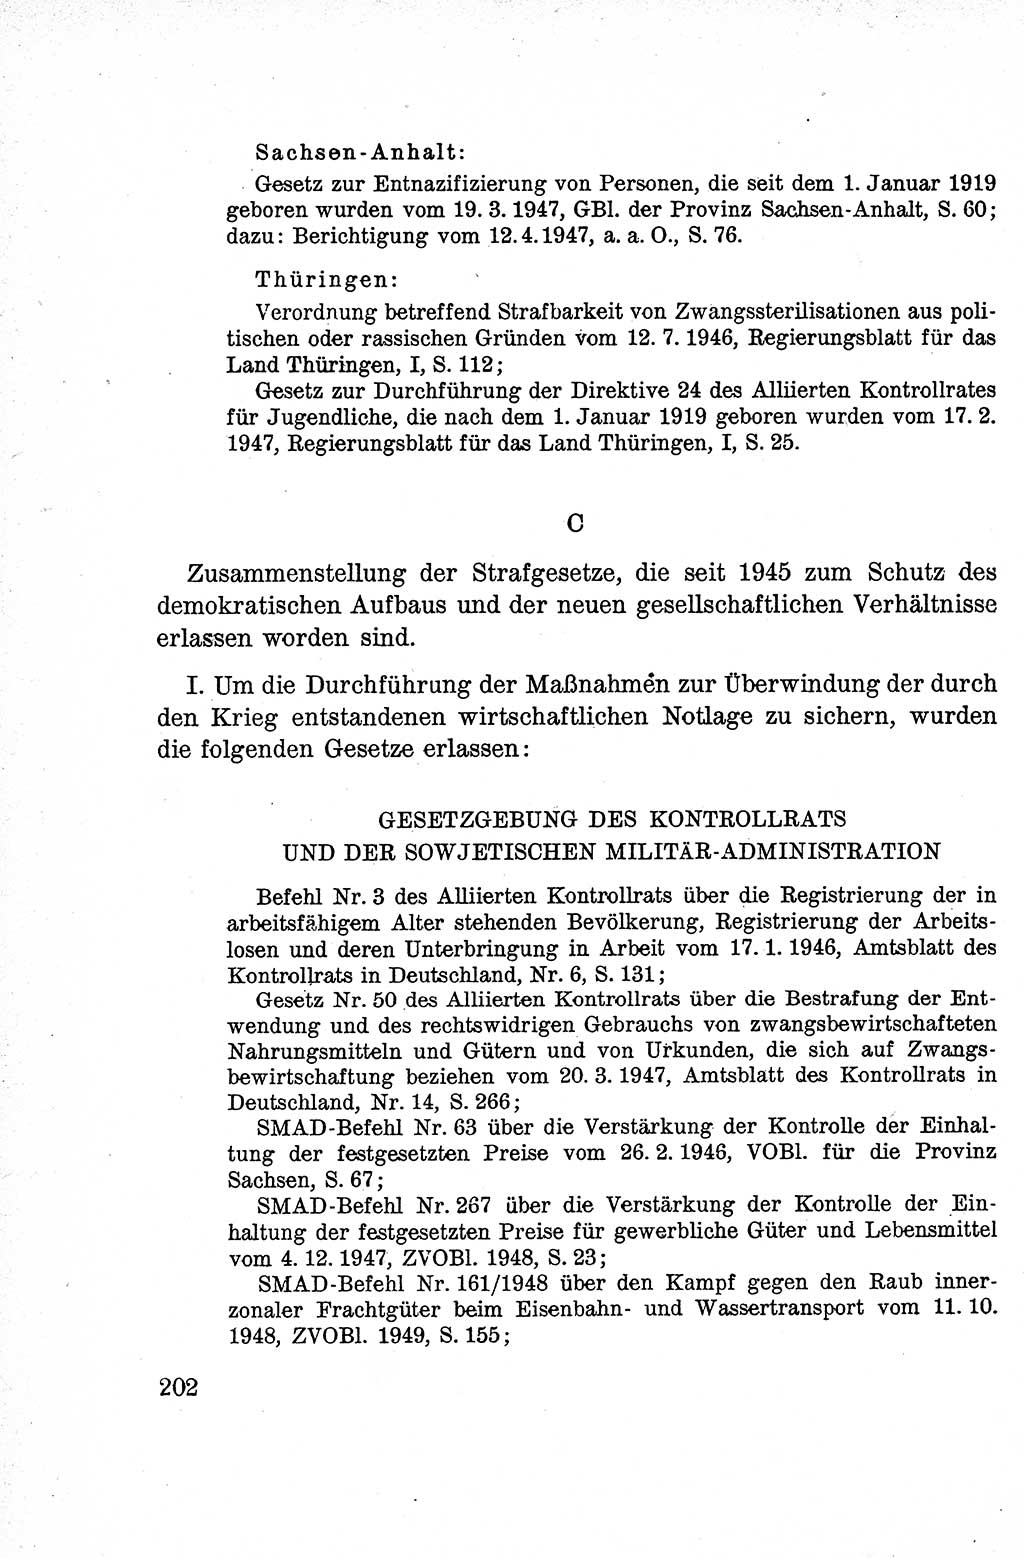 Lehrbuch des Strafrechts der Deutschen Demokratischen Republik (DDR), Allgemeiner Teil 1959, Seite 202 (Lb. Strafr. DDR AT 1959, S. 202)